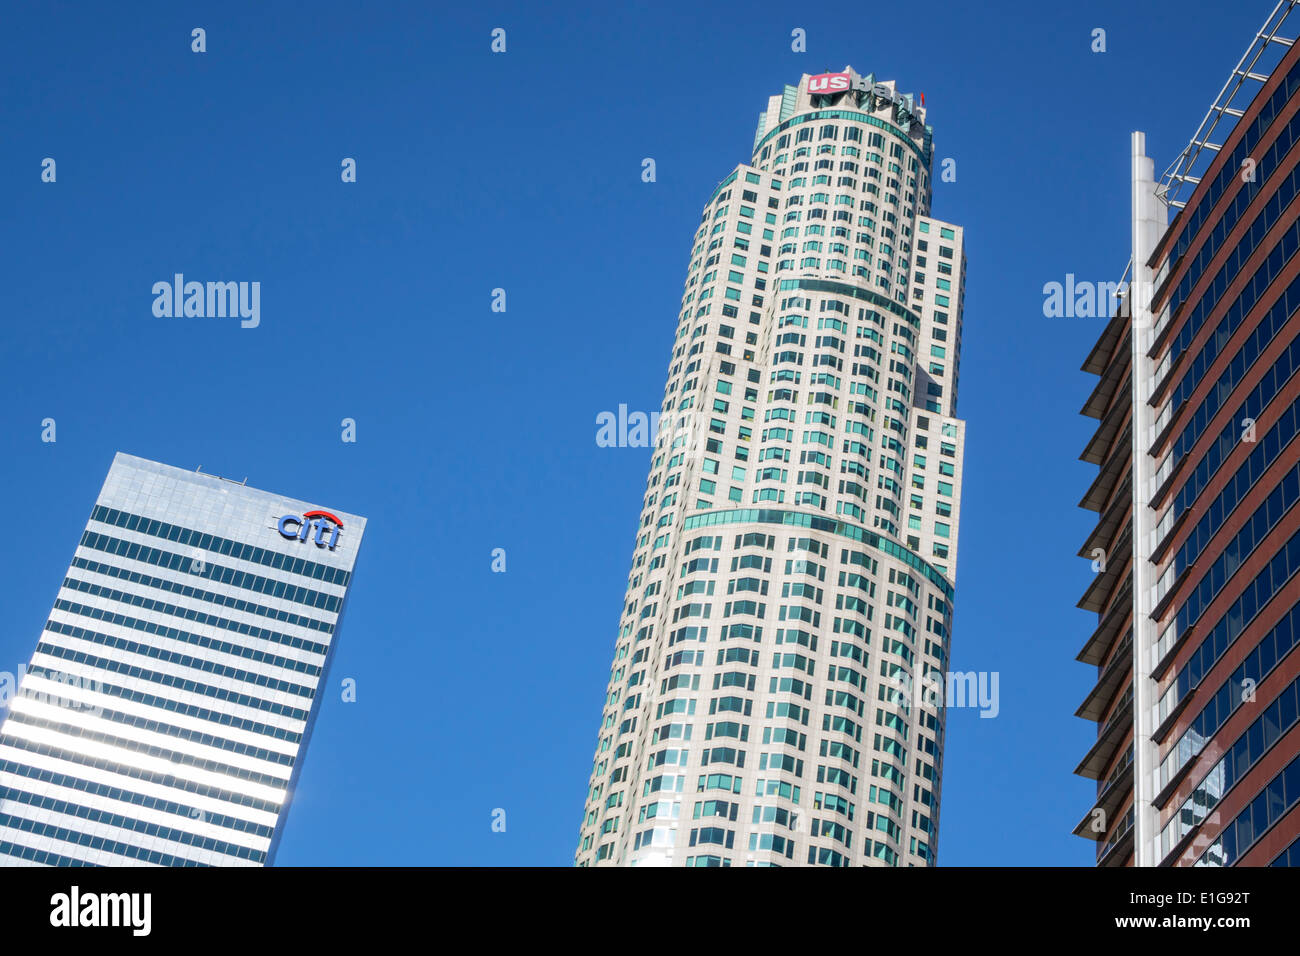 Los Angeles Californie, centre-ville, quartier financier, gratte-ciel, gratte-ciel, bâtiment, US Bank Tower, bibliothèque Tower, rond, postmoderne, architecture Banque D'Images